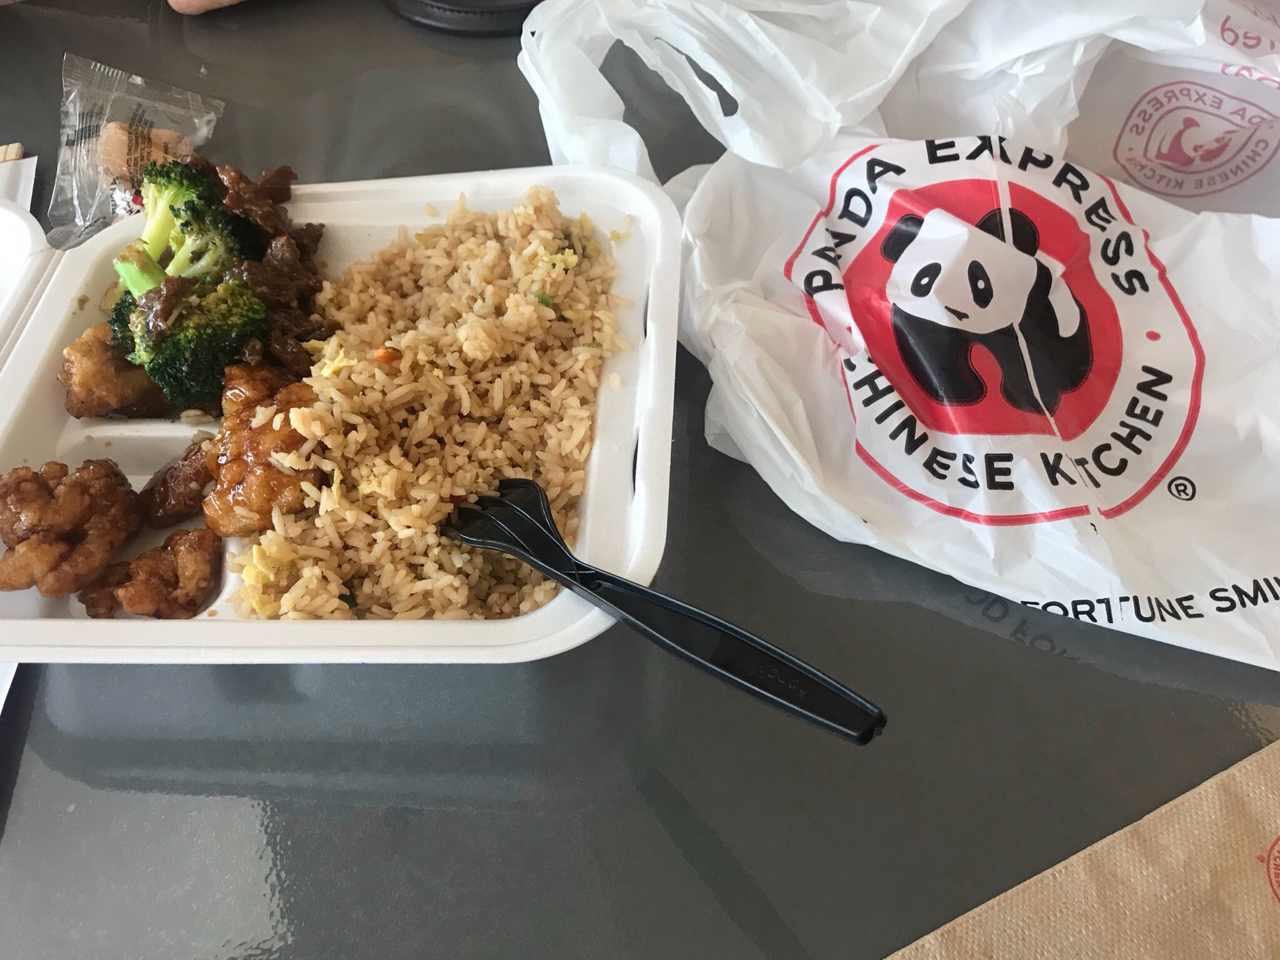 アメリカドラマで見かける中華料理の箱 ロサンゼルス生活漫画日記